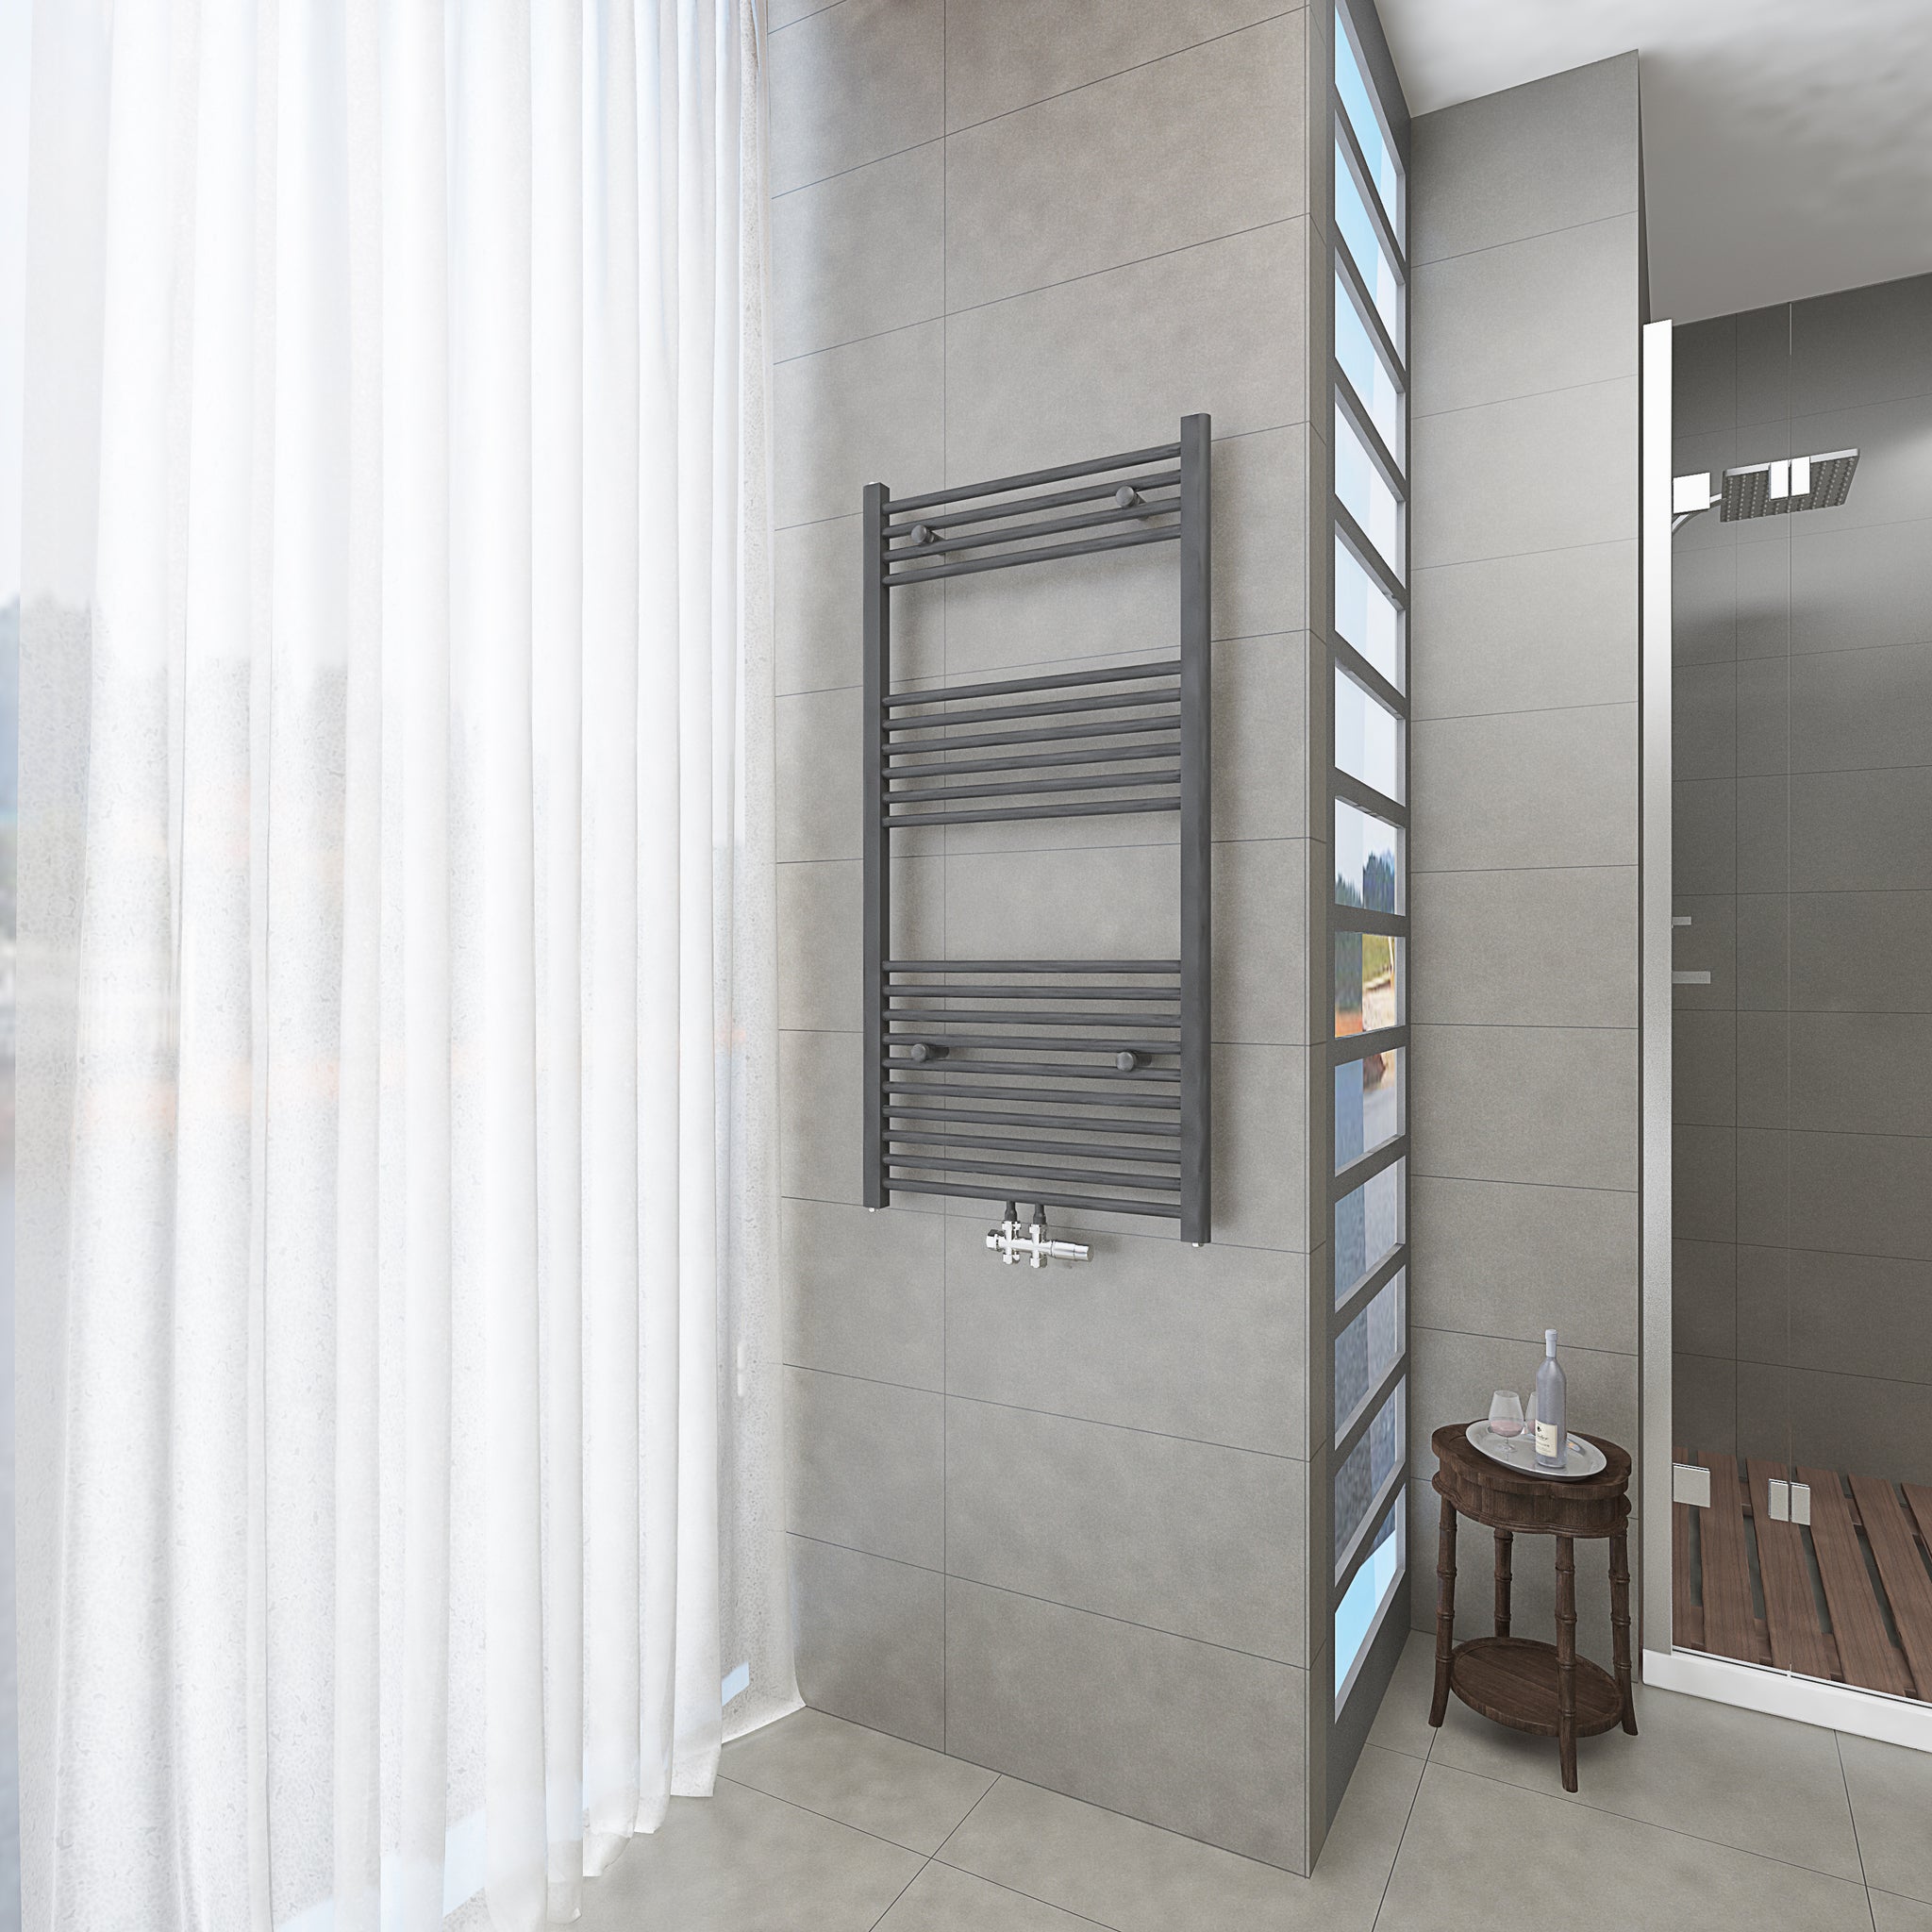 Badheizkörper Grau/Anthrazit - 120x60 CM Heizkörper und Handtuchtrockner in einem - Mittelanschluss - Rauchfreie Kohleheizung für das Badezimmer